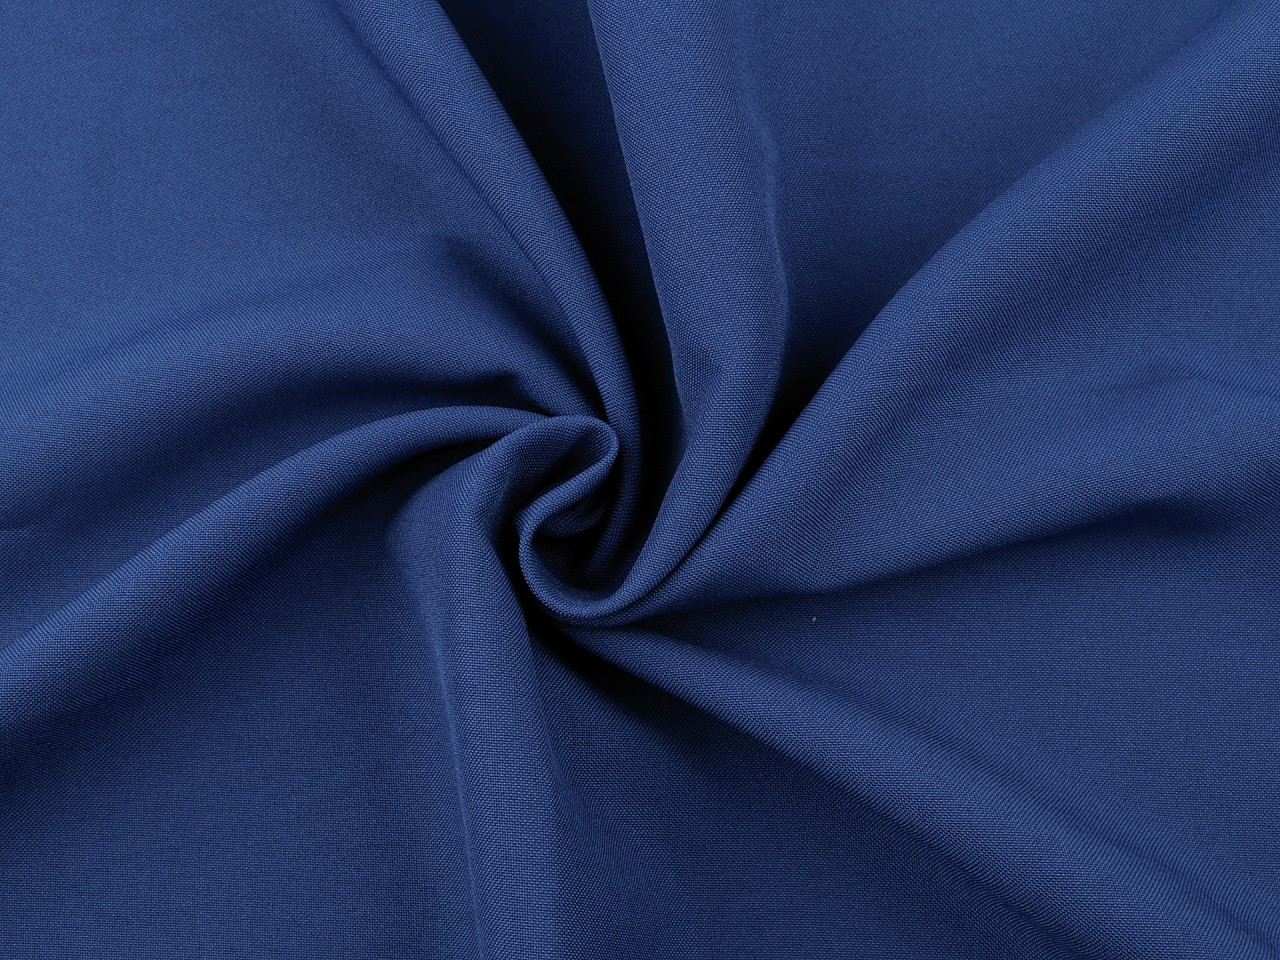 Polyesterová látka Rongo, barva 7 (22) modrá